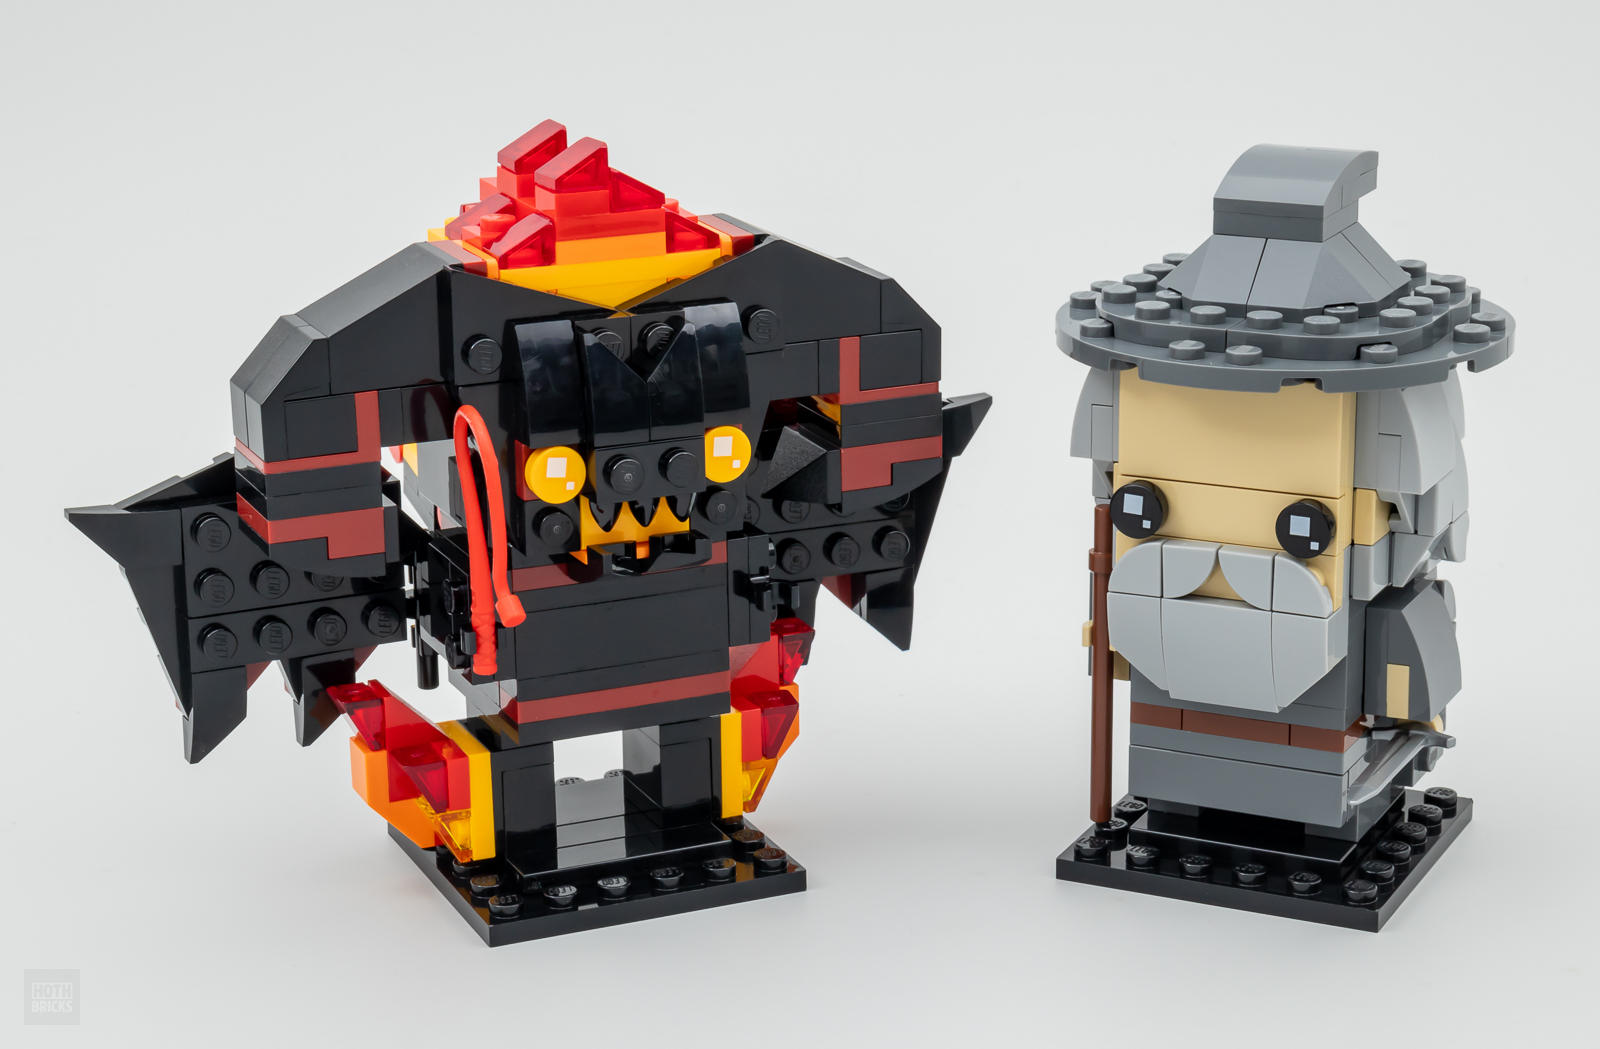 La recensione di LEGO Il Signore degli Anelli 